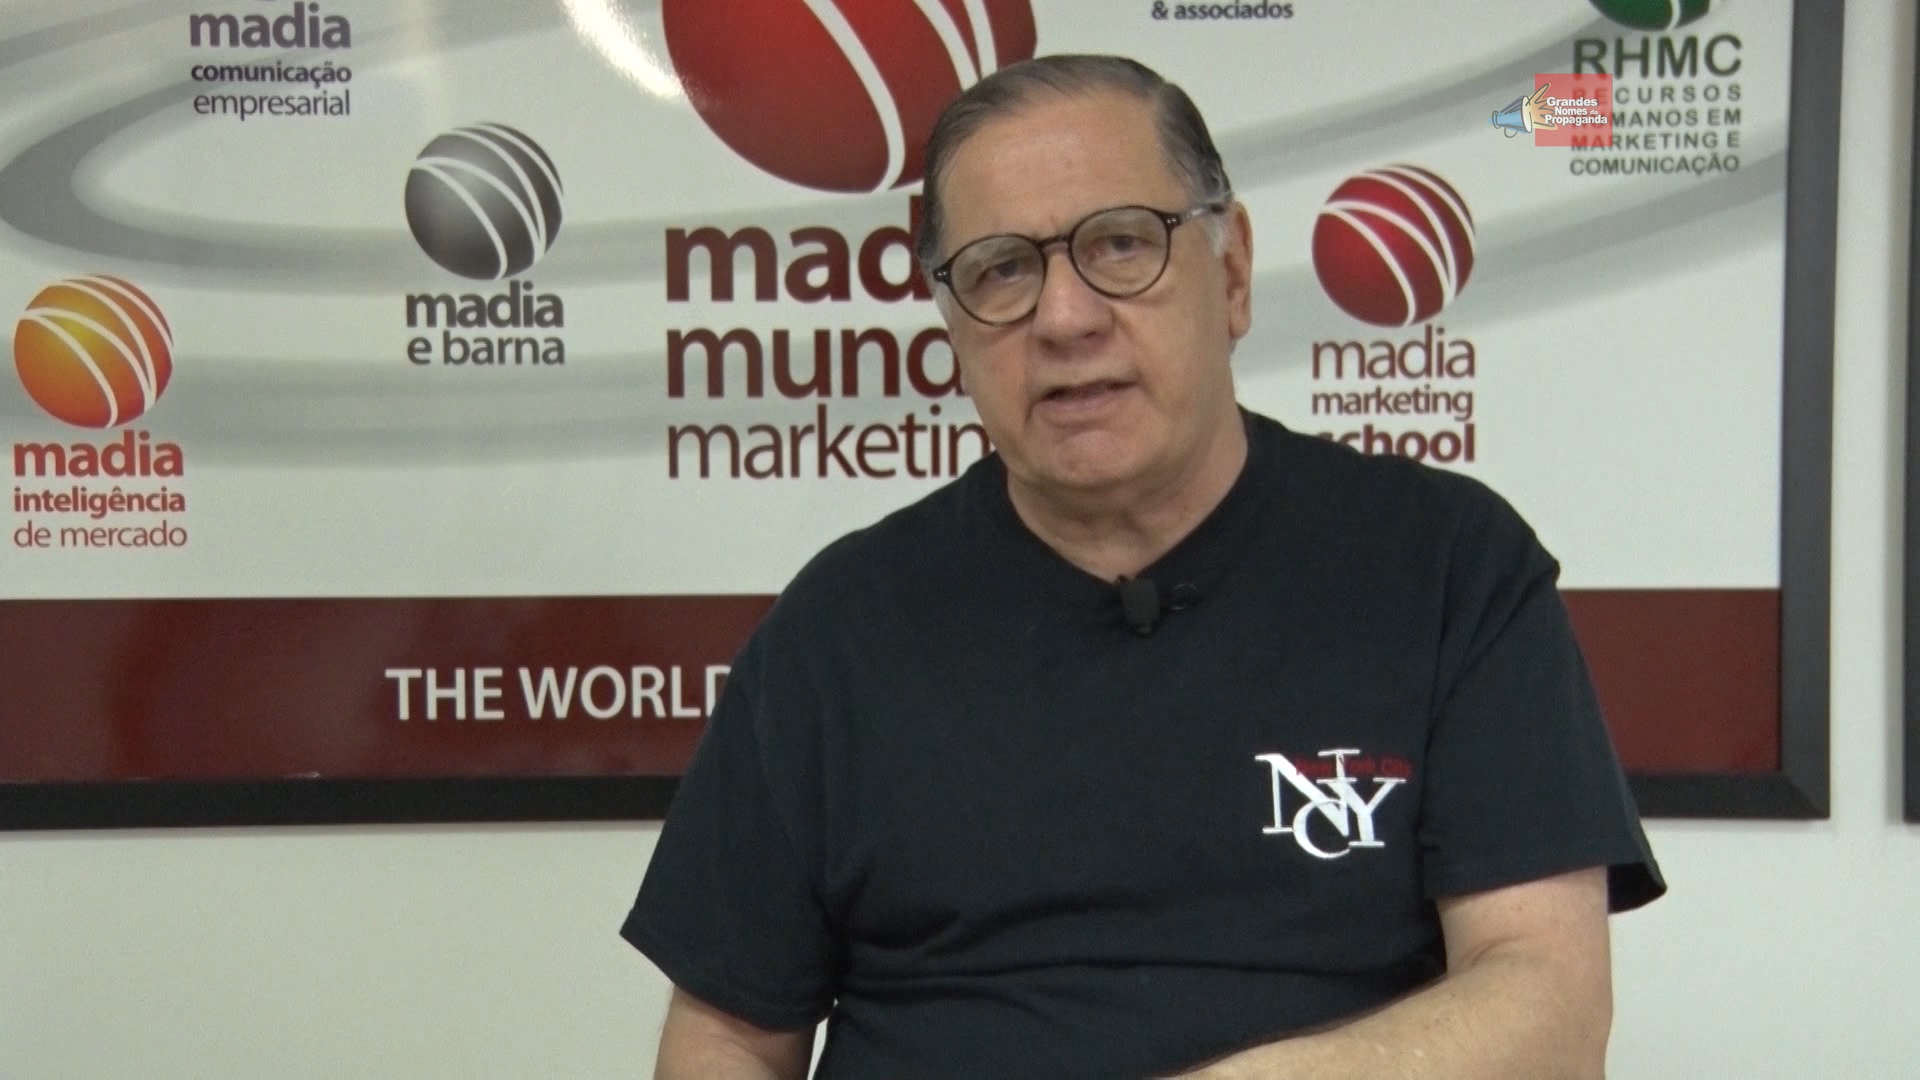 Confira o quadro MKT, Now com Francisco Madia de Souza